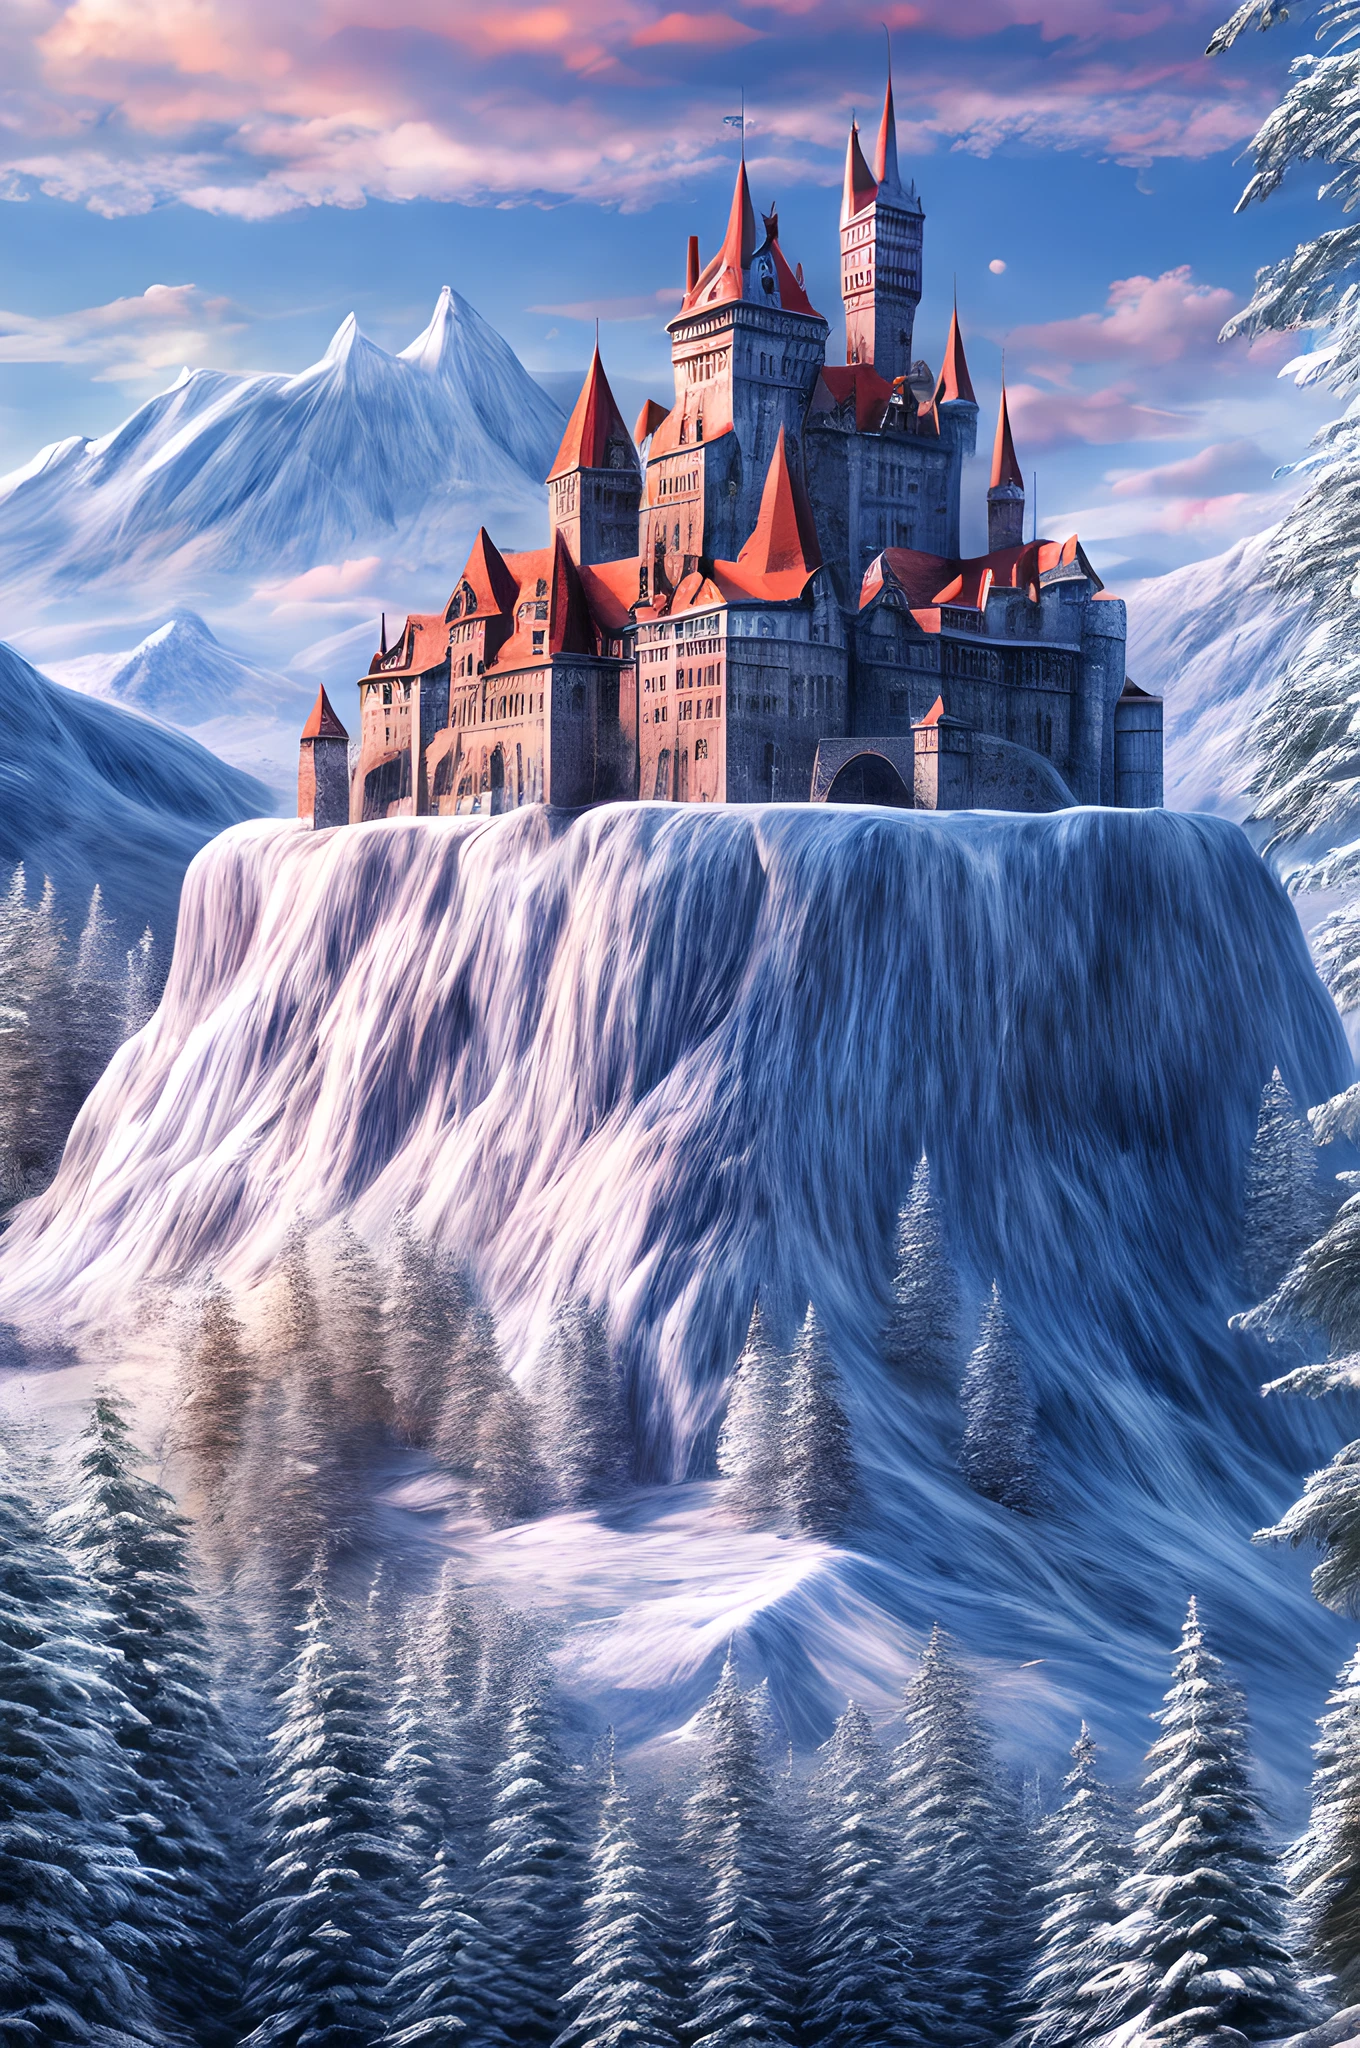 파노라마 상을 받은 사진, 사실적인, 매우 상세한 ~의 a castle 만들어진 from [[얼음]] 만들어진_~의_얼음 standing on the peak ~의 a snowy mountain, an impressive best detailed castle 만들어진 from 얼음 (사실적인, 매우 상세한), 타워와 함께, 교량, 용암으로 가득 찬 해자 (사실적인, 매우 상세한),  standing on top ~의 a snowy mountain (걸작, 매우 상세한, 최고의 품질), 소나무와, 일몰 빛, 공중에 구름이 좀 있어,  고산 산맥 배경, 가장 현실적인, 최고의 세부 사항, 최고의 품질, 16,000, [매우 상세한], 걸작, 최고의 품질, (매우 상세한), 울트라 와이드 샷, 포토리얼리즘, depth ~의 field,